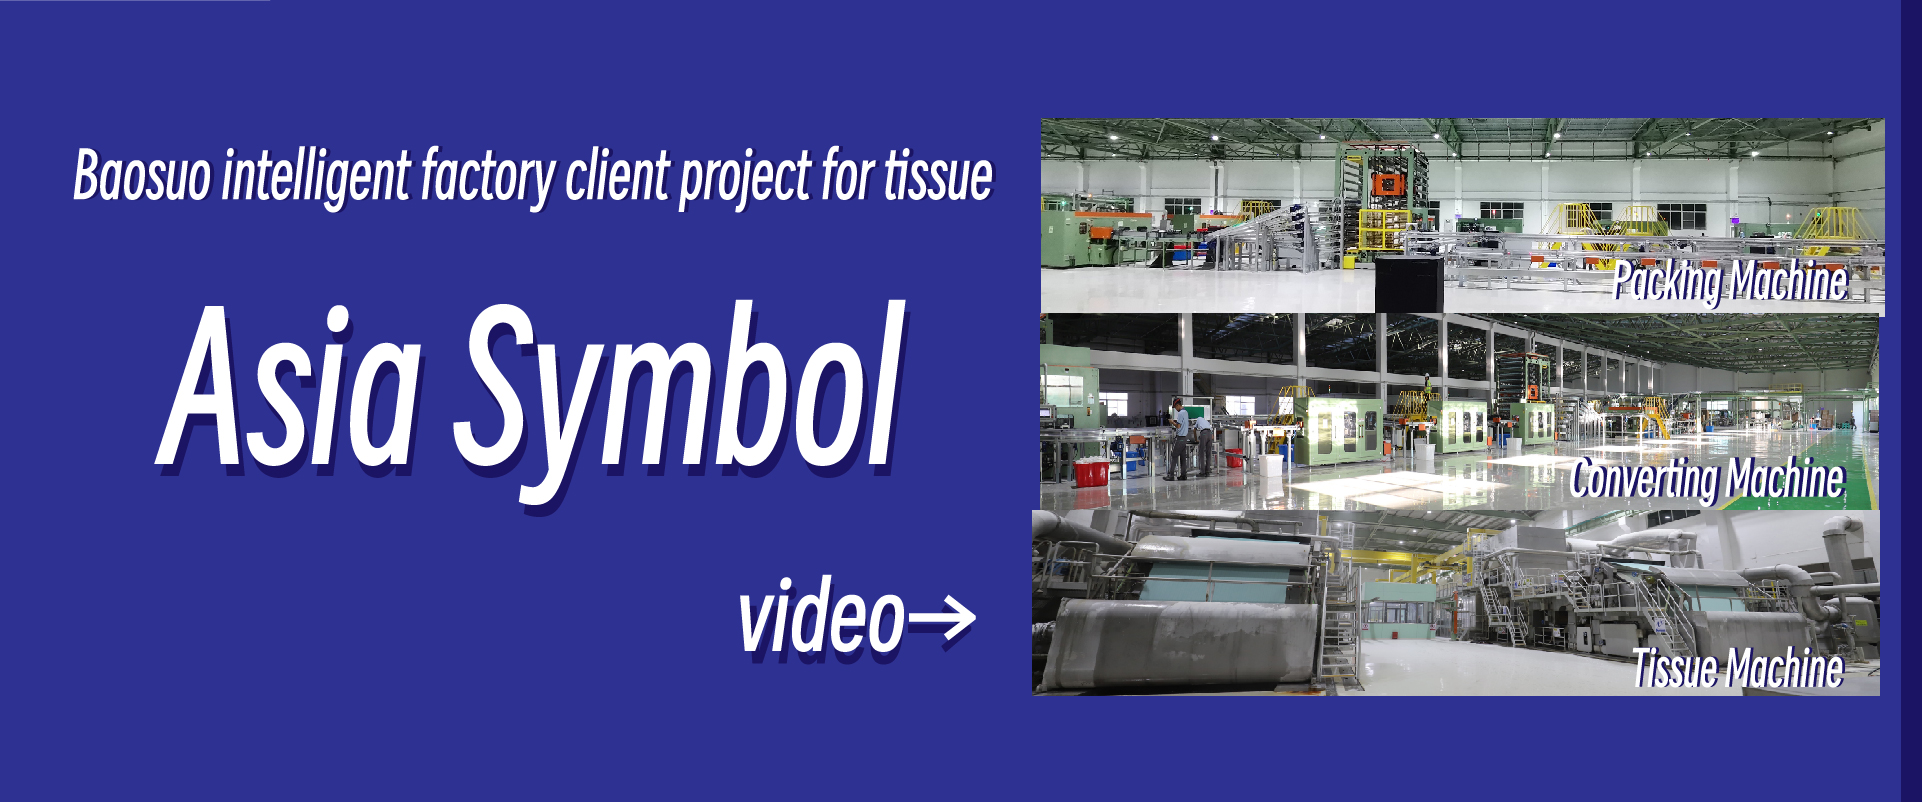 Inteligentny projekt klienta fabrycznego Baosuo dla tkanki —— Asia Symbol